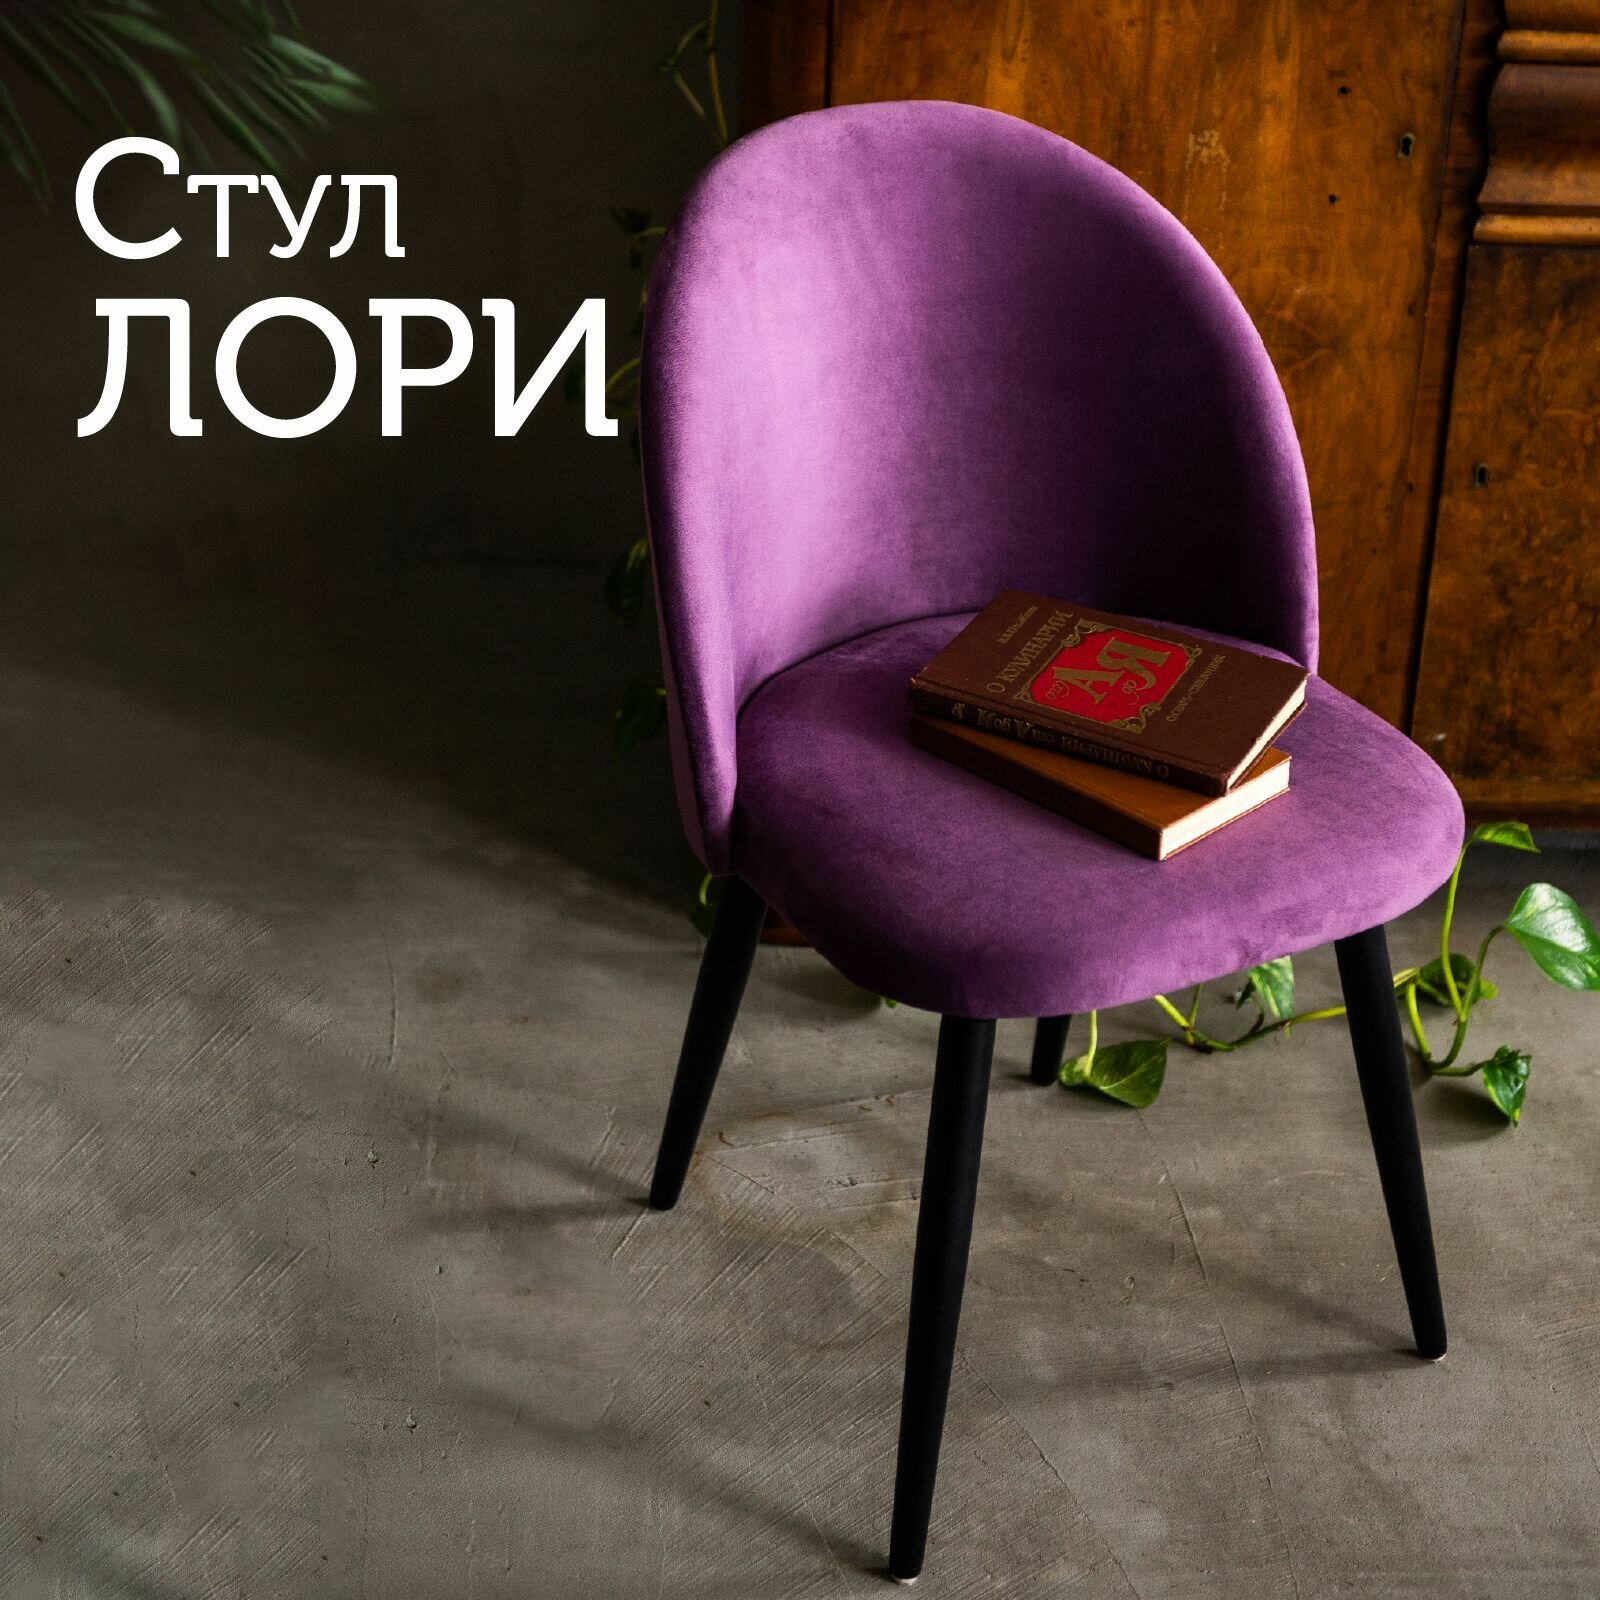 Мягкий стул кухонный со спинкой Лори, ножки деревянные, обеденный для кухни, гостиной, для дома, обивка вельвет лиловый, АМИ мебель, Беларусь